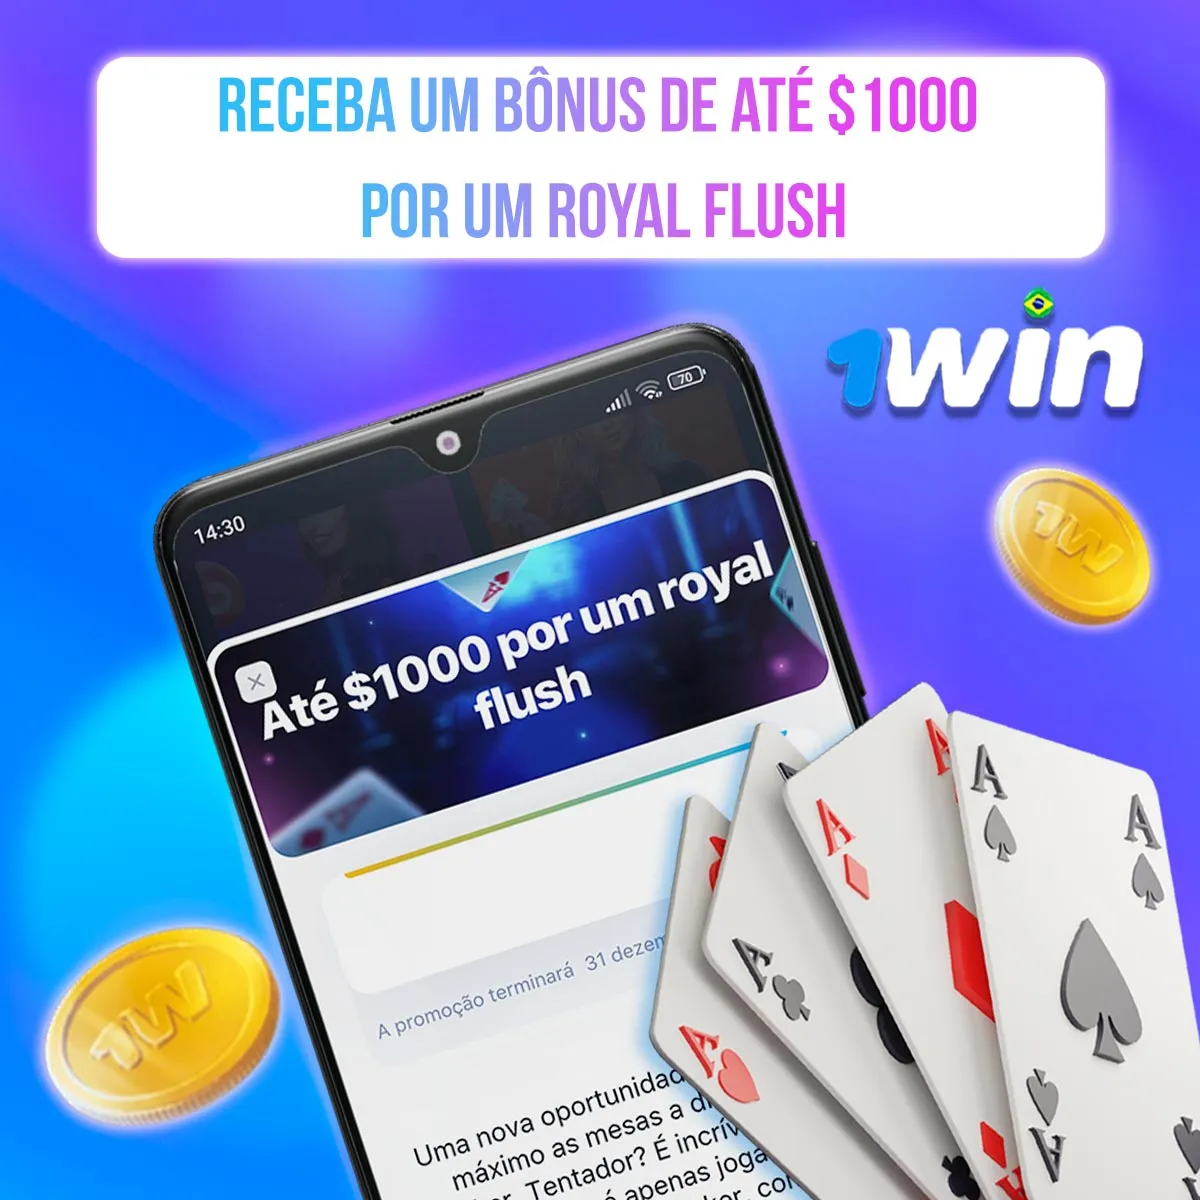 Bônus de até $1000 para Royal Flush no cassino da casa de apostas 1win no mercado brasileiro